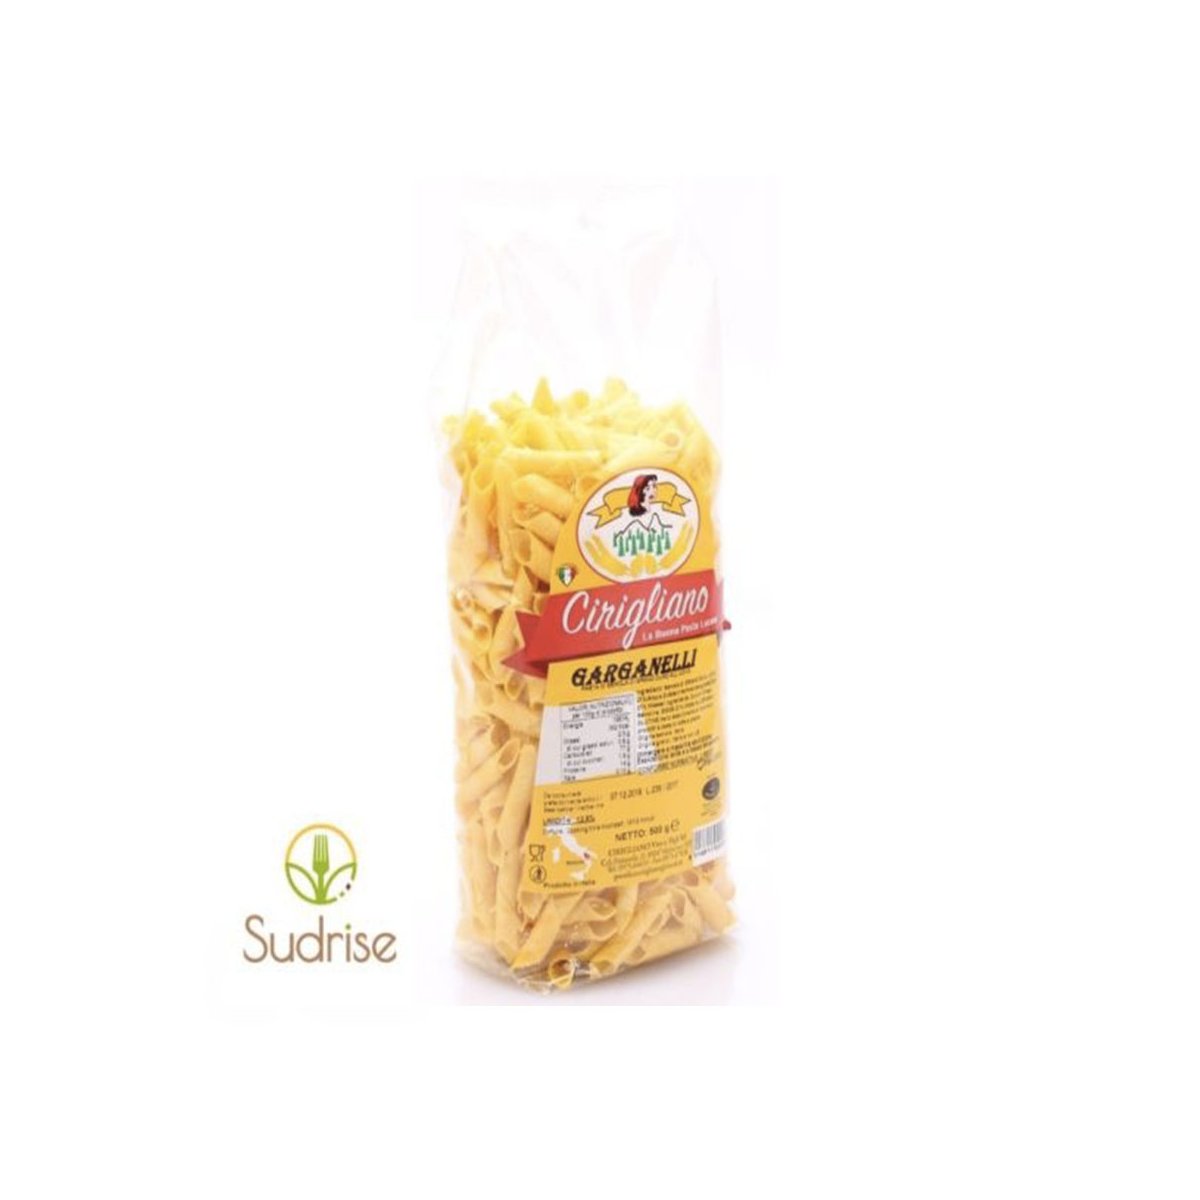 Garganelli di semola di grano duro all'uovo-Cirigliano-Prodotti Tipici Lucani